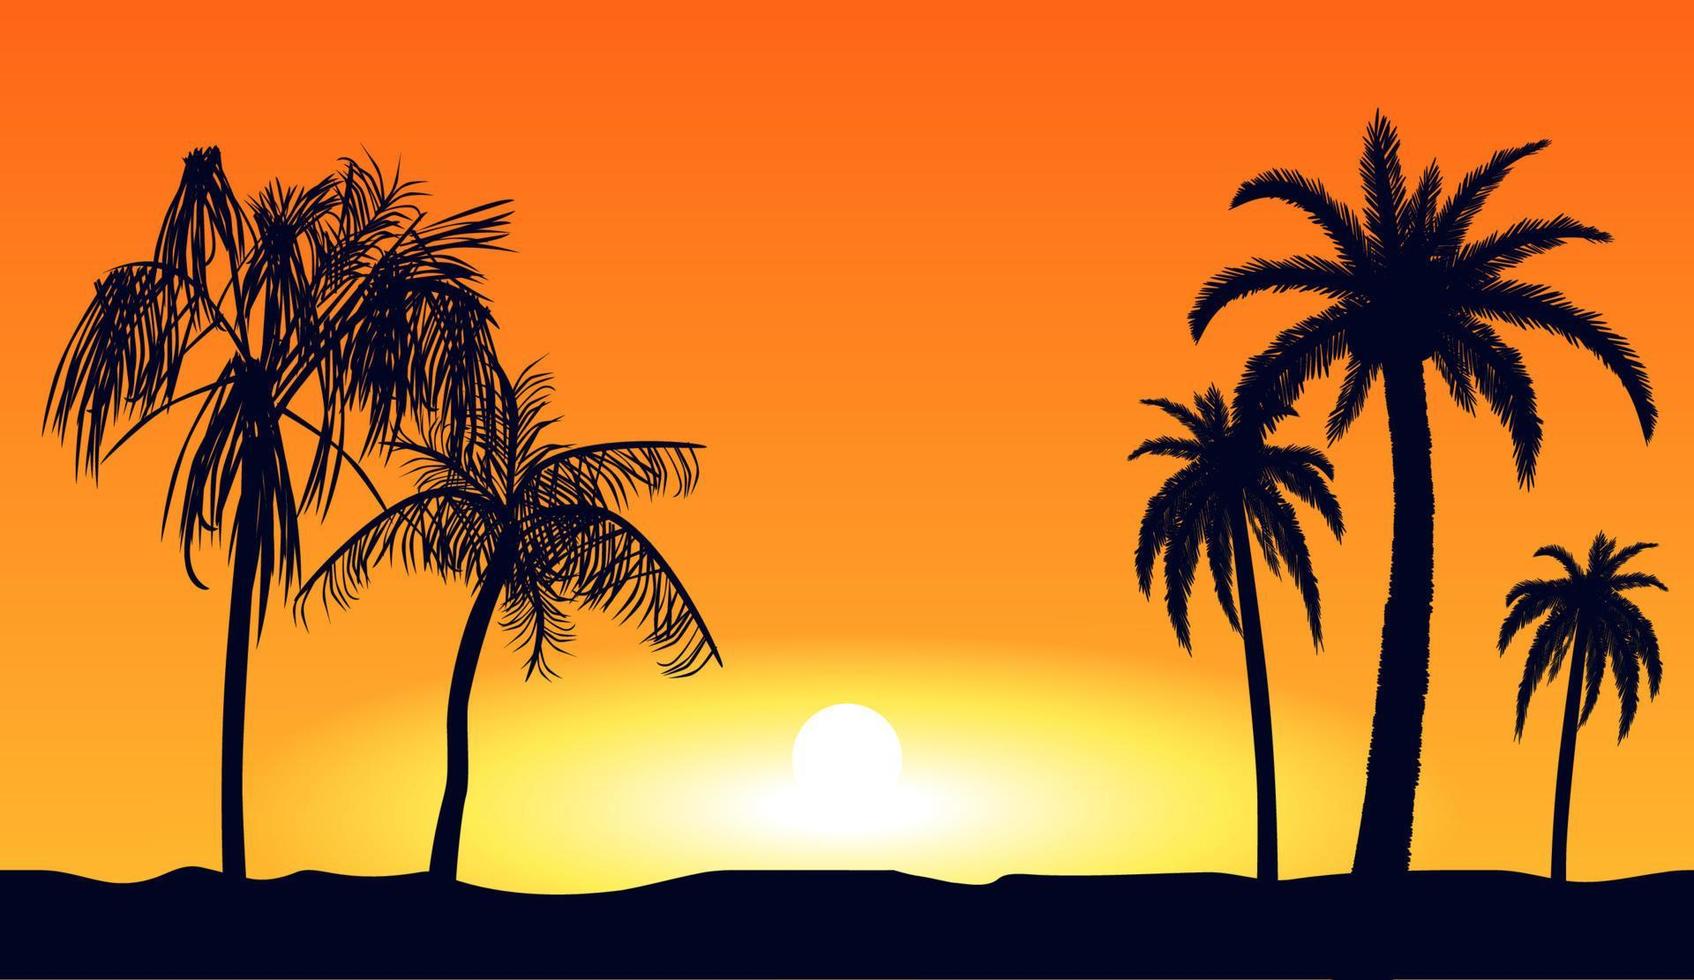 siluetas de palmeras tropicales naranjas al atardecer. playa tropical sobre fondo amarillo puesta de sol hermoso paraíso costero resort laguna romántica con exótica noche de vector. vector